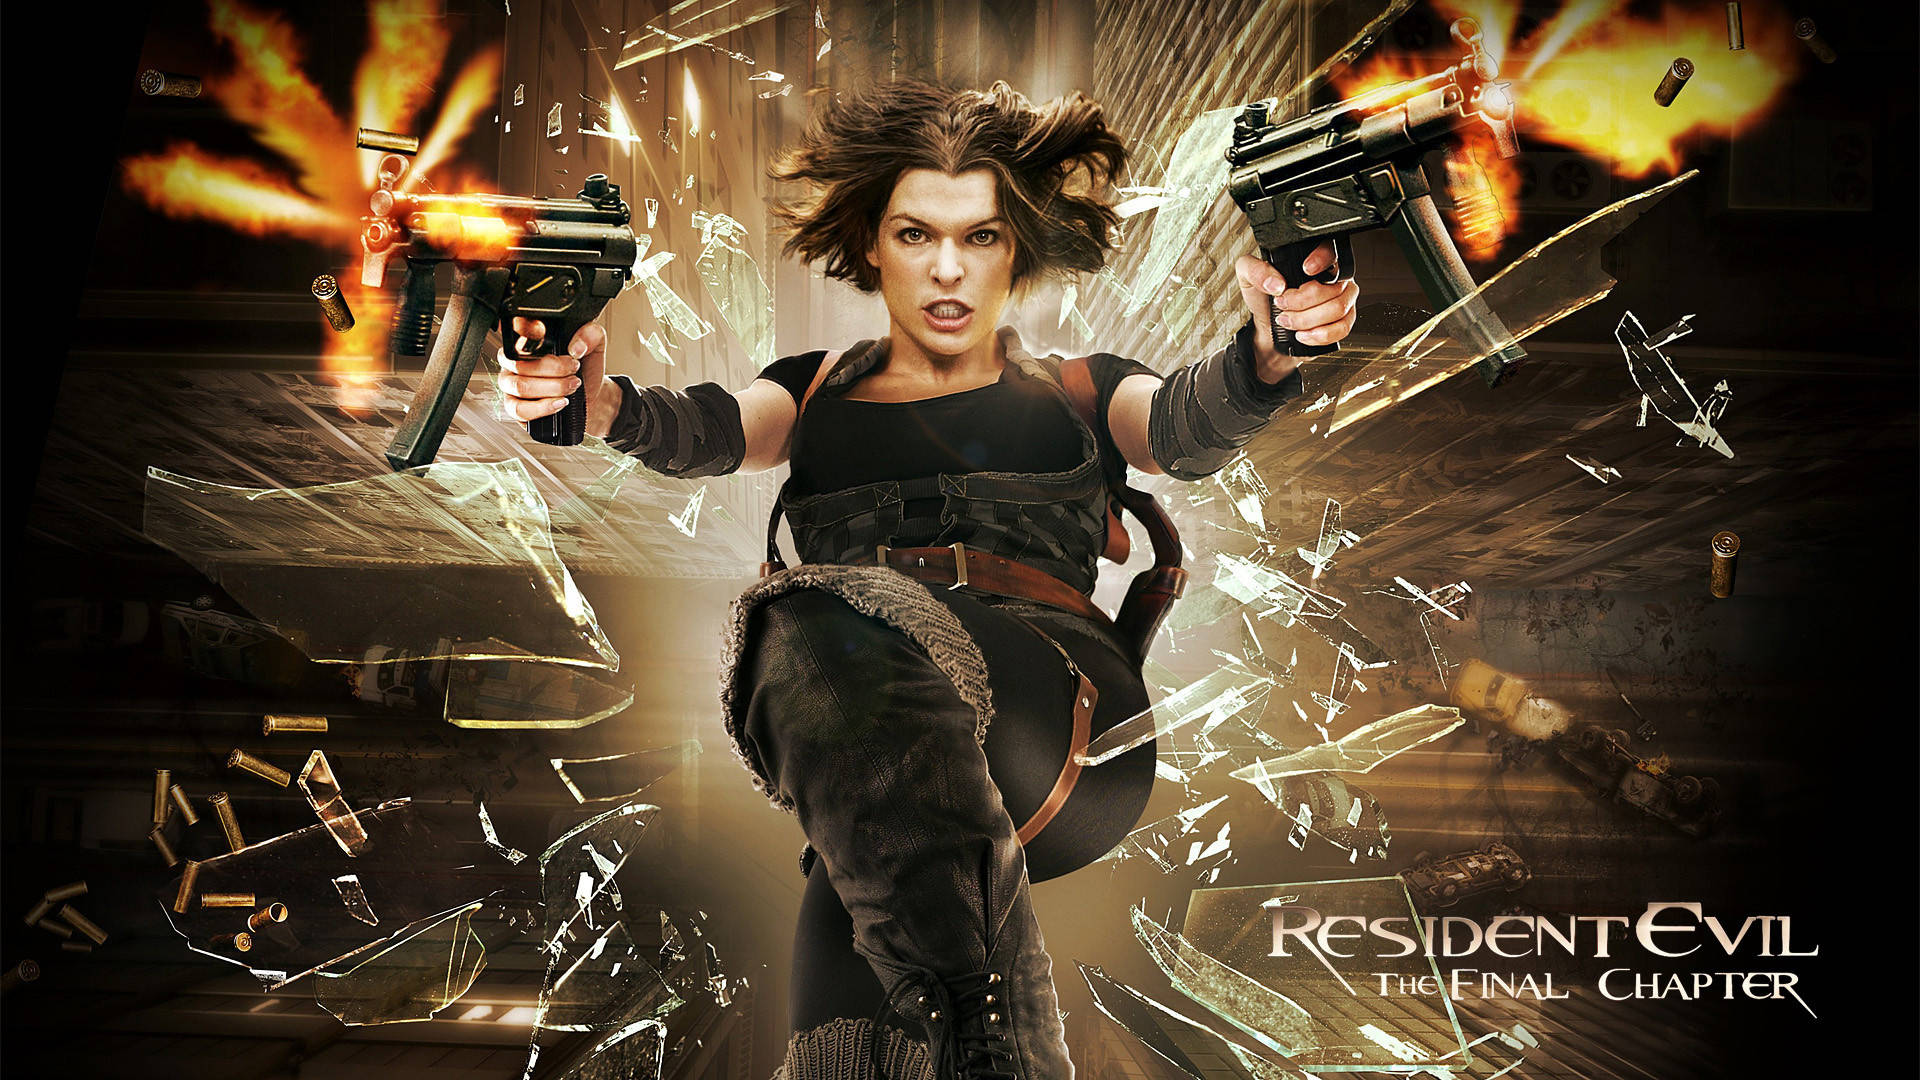 Resident Evil 6 Film Poster Background